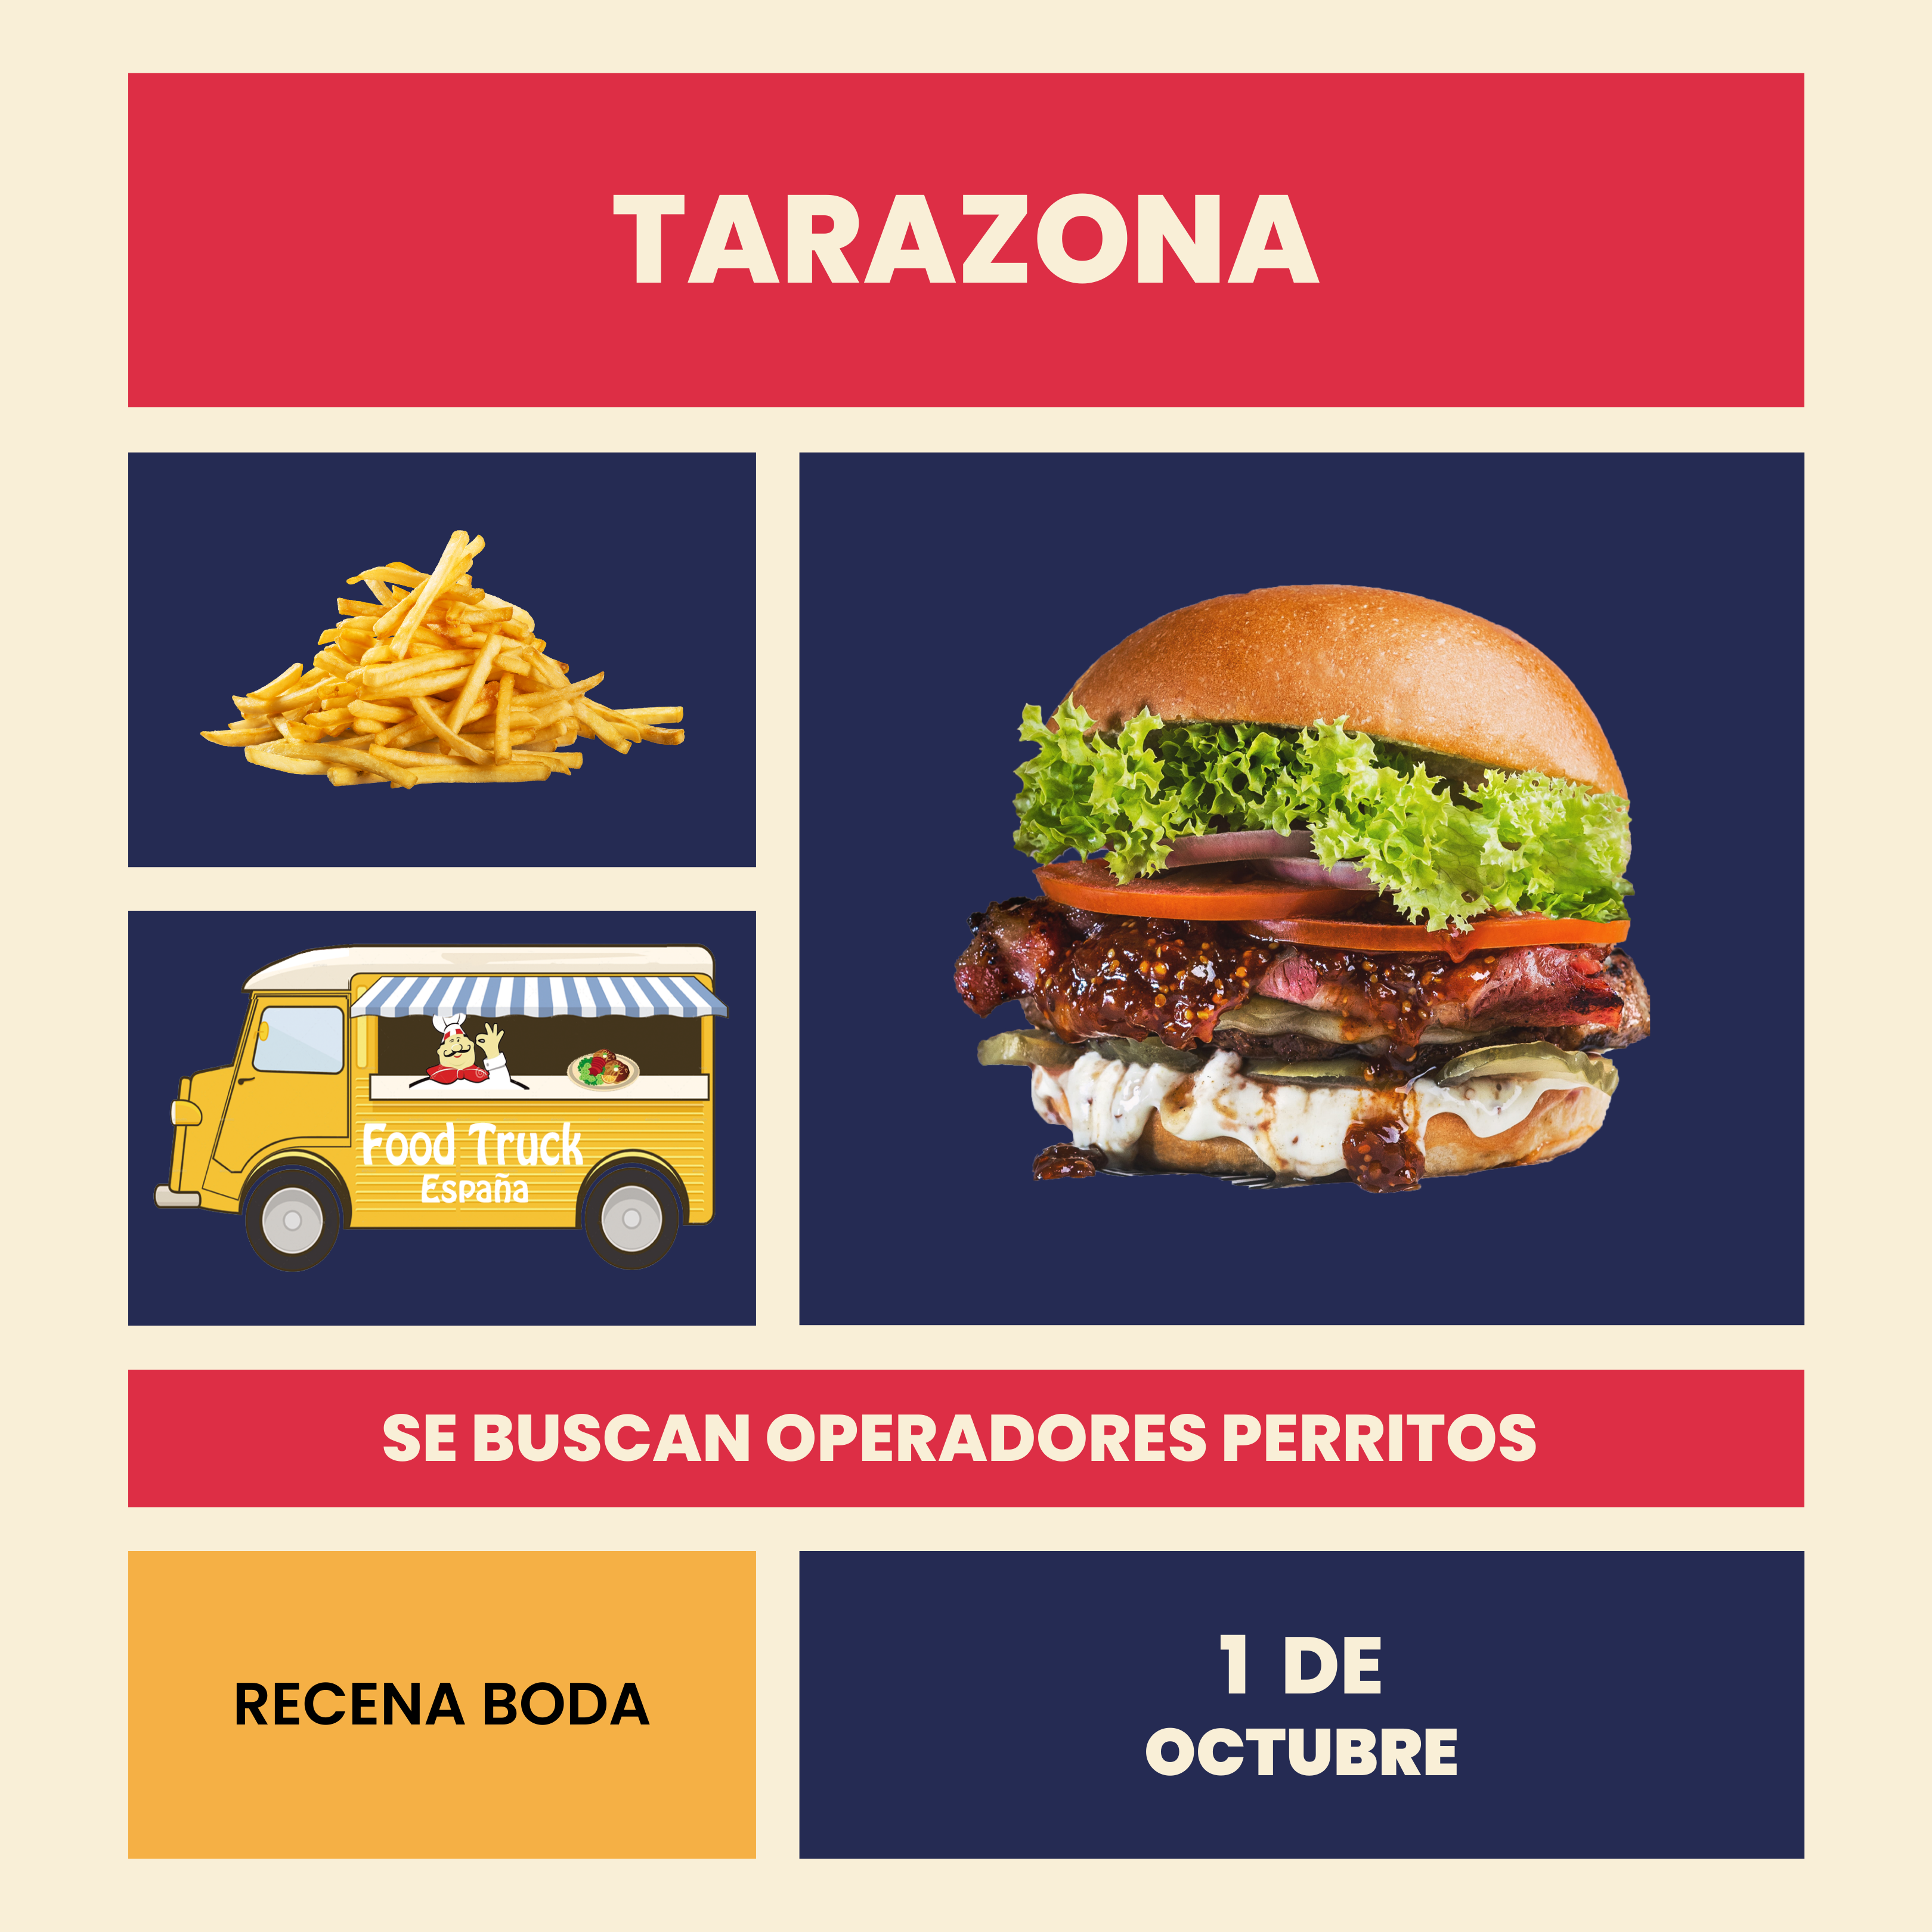 food-truck-tarazona